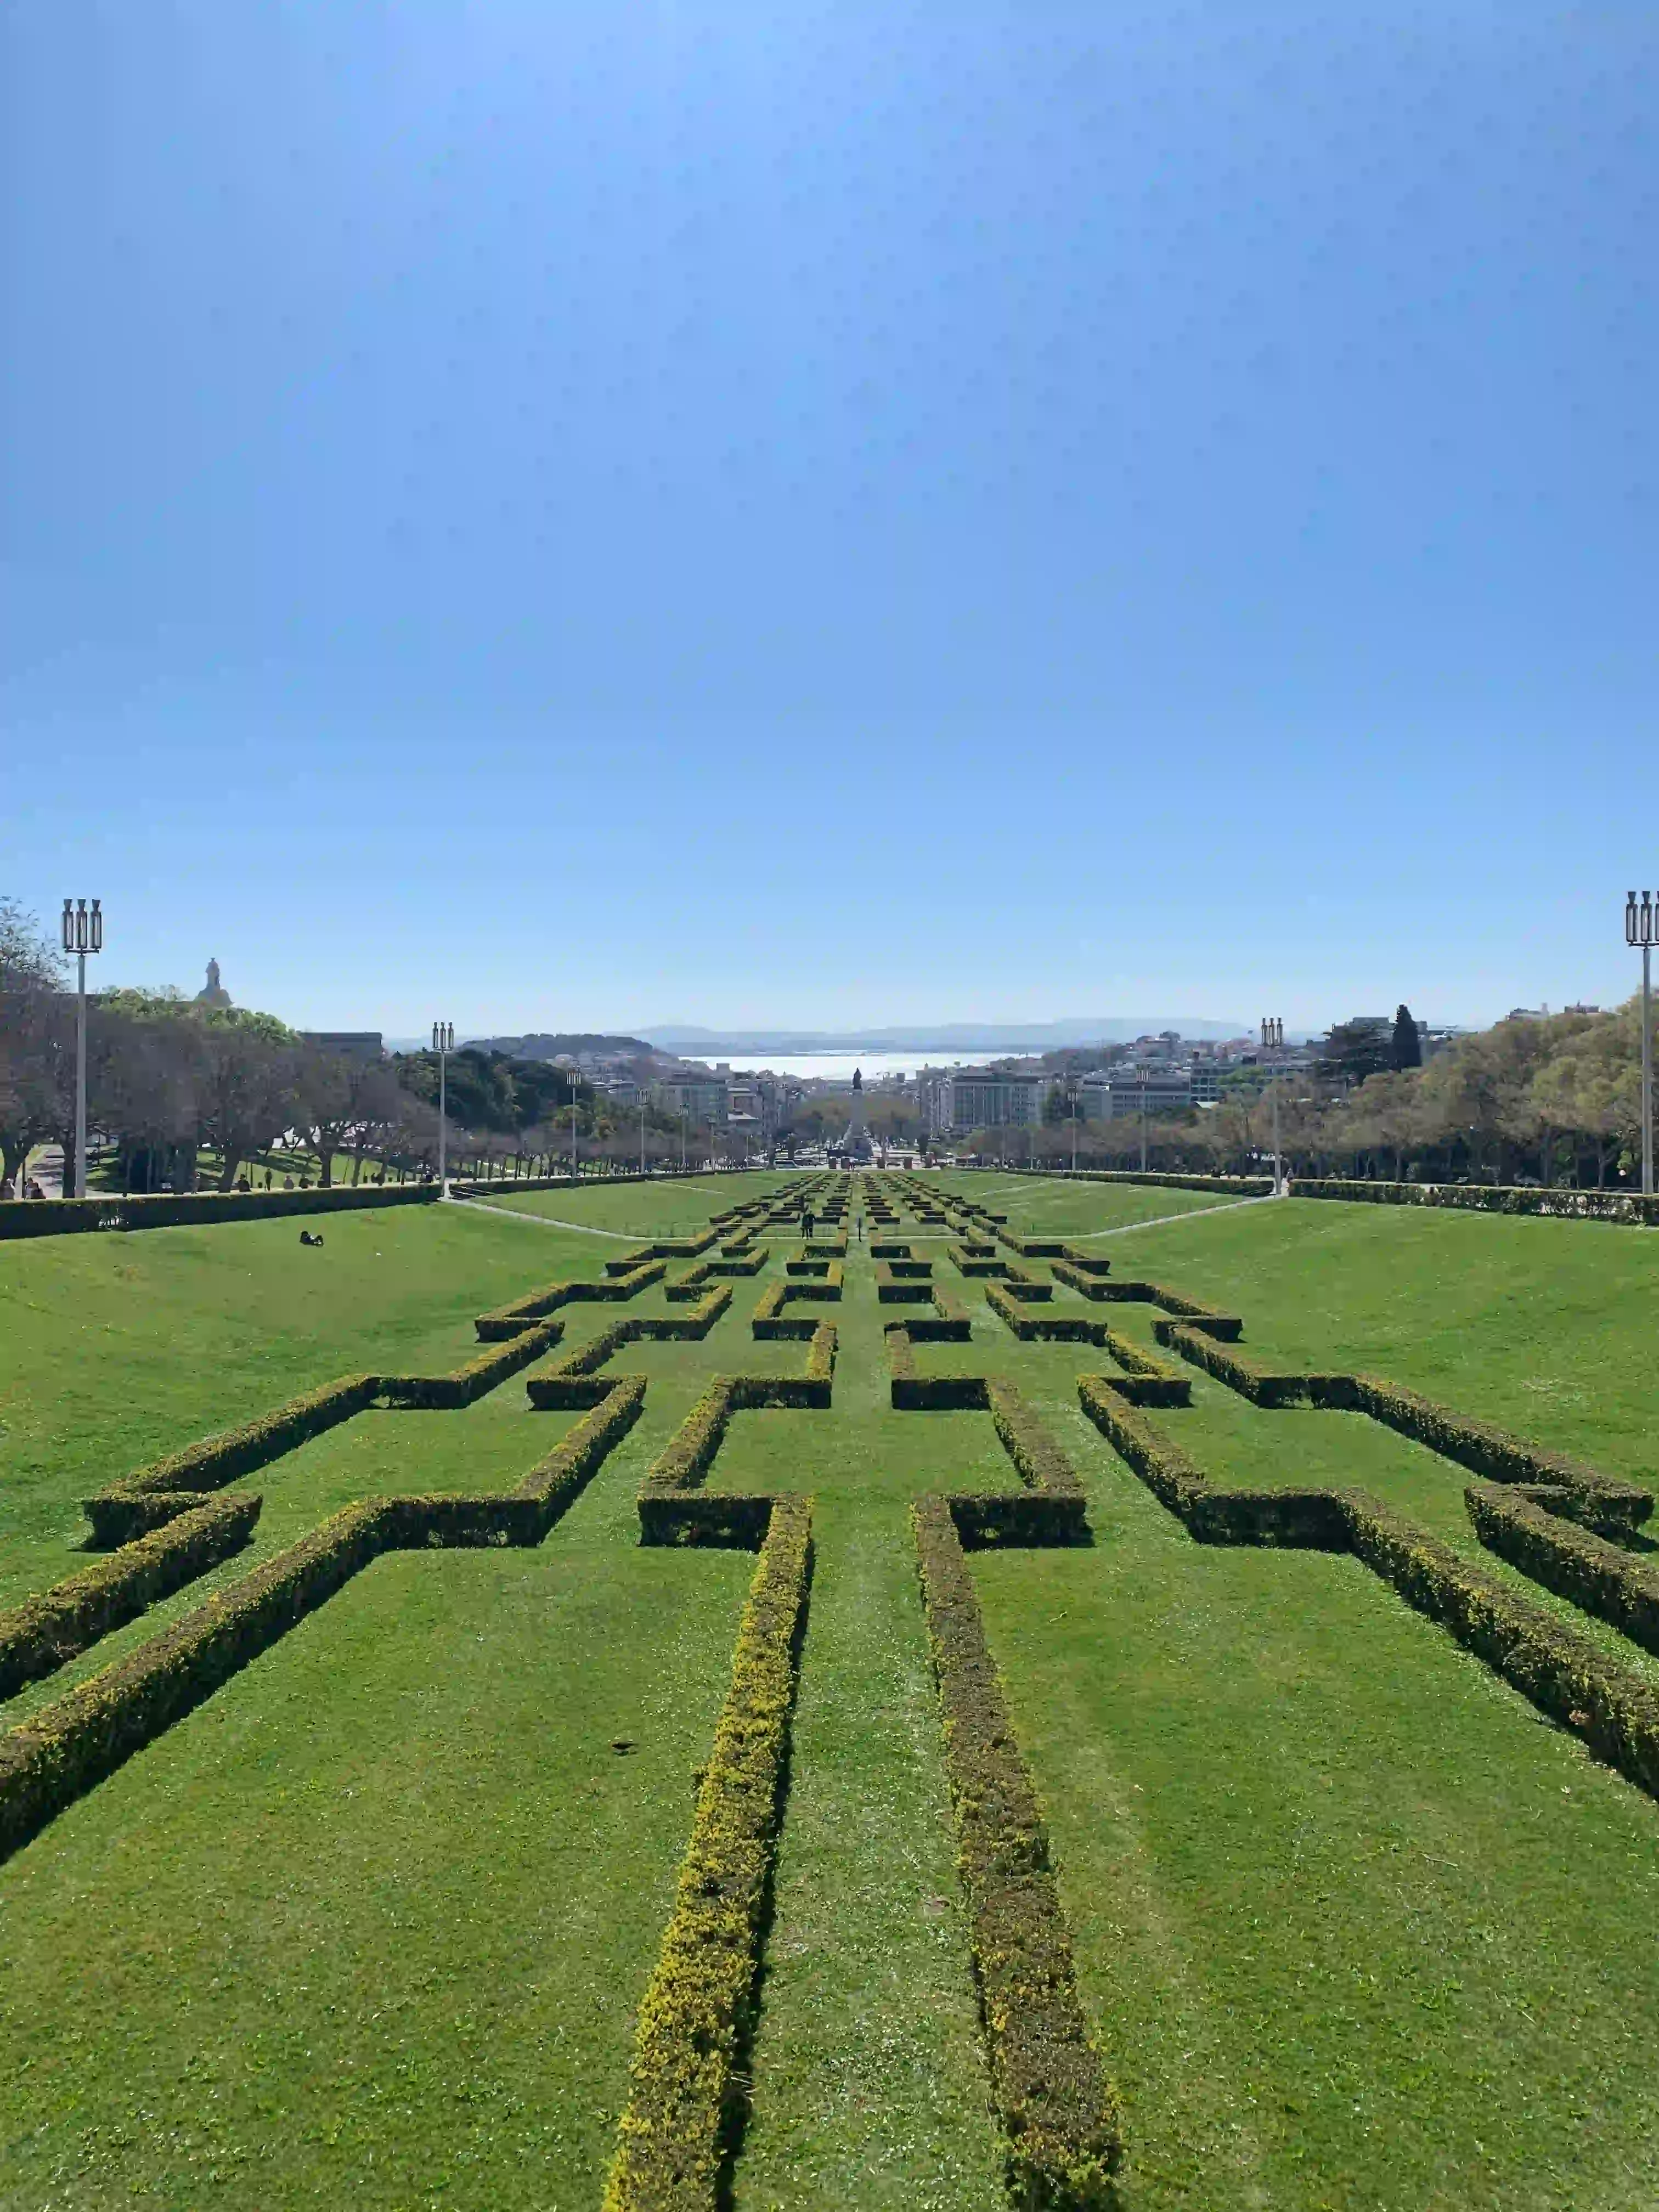 Parque Eduardo VII in Lisbon